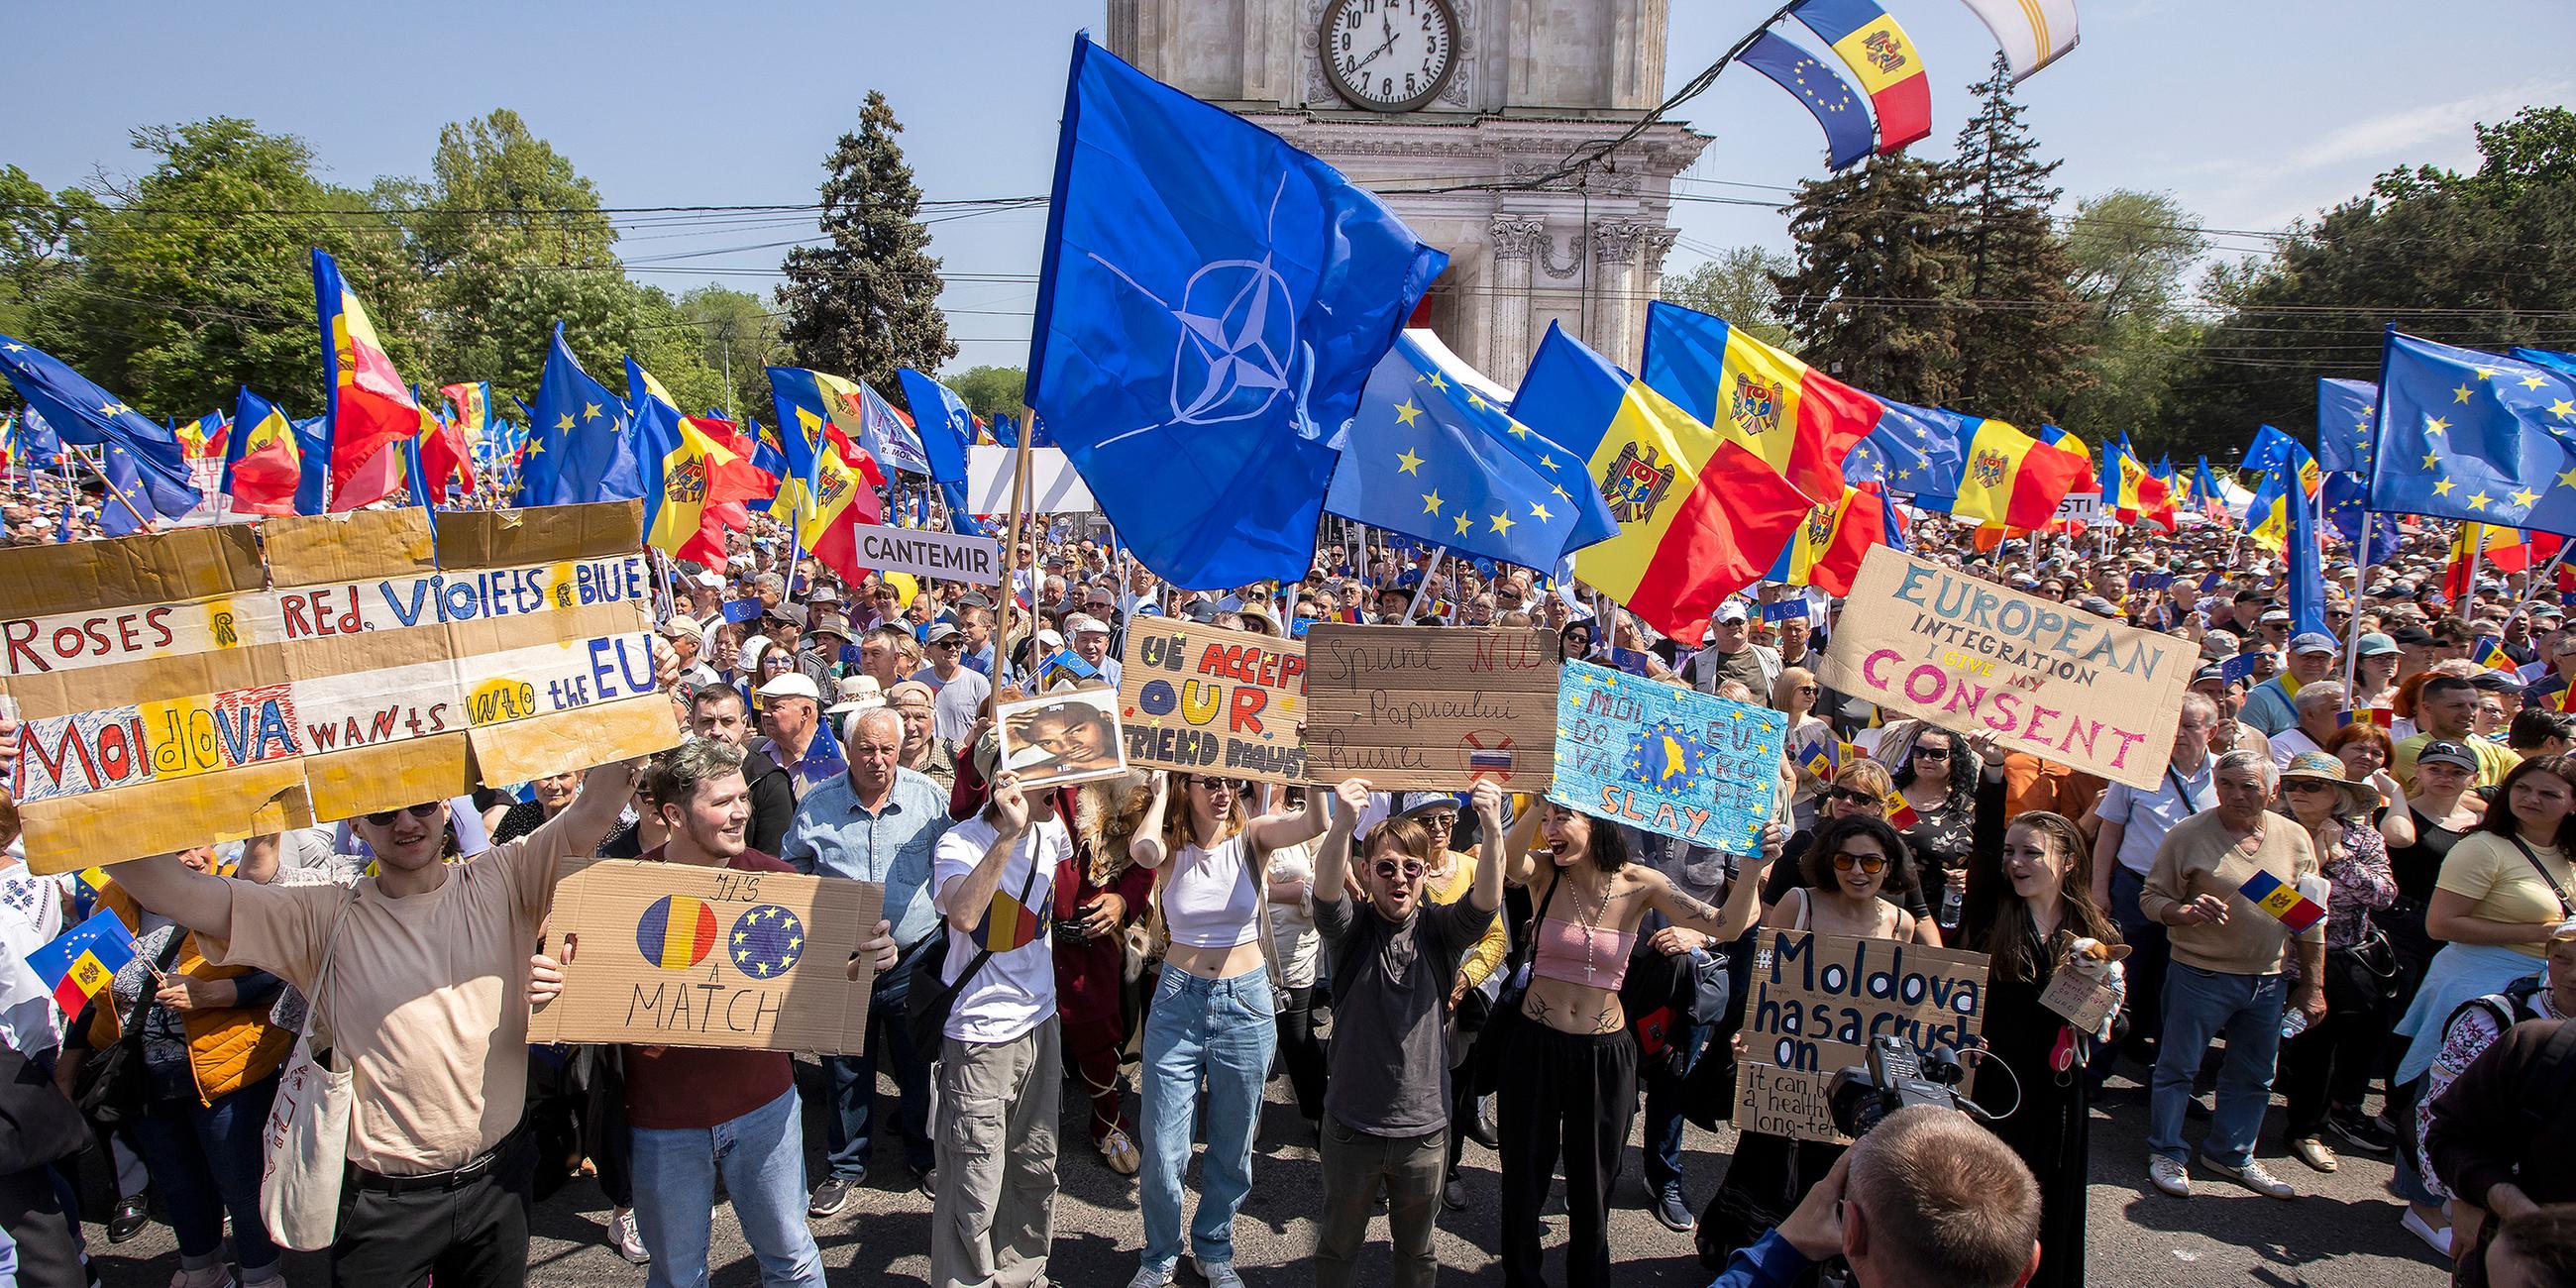 Pro-EU-Demonstration in Chsisnau, Moldau